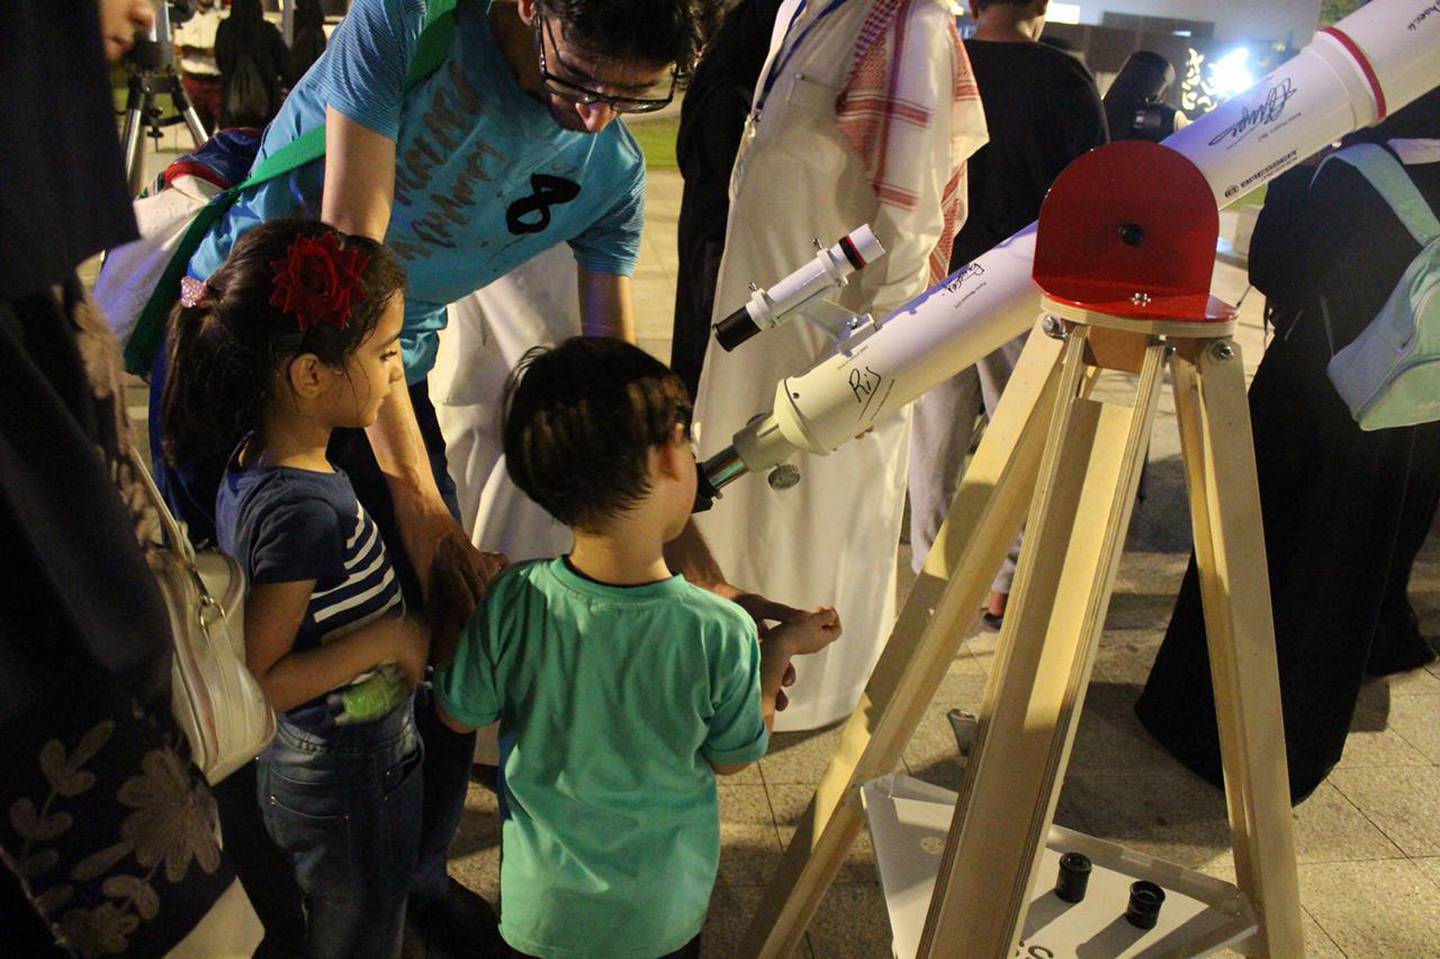 Saudi club AstroGeeks holds an astronomy event in 2019. Photo: Ghaida Aloumi